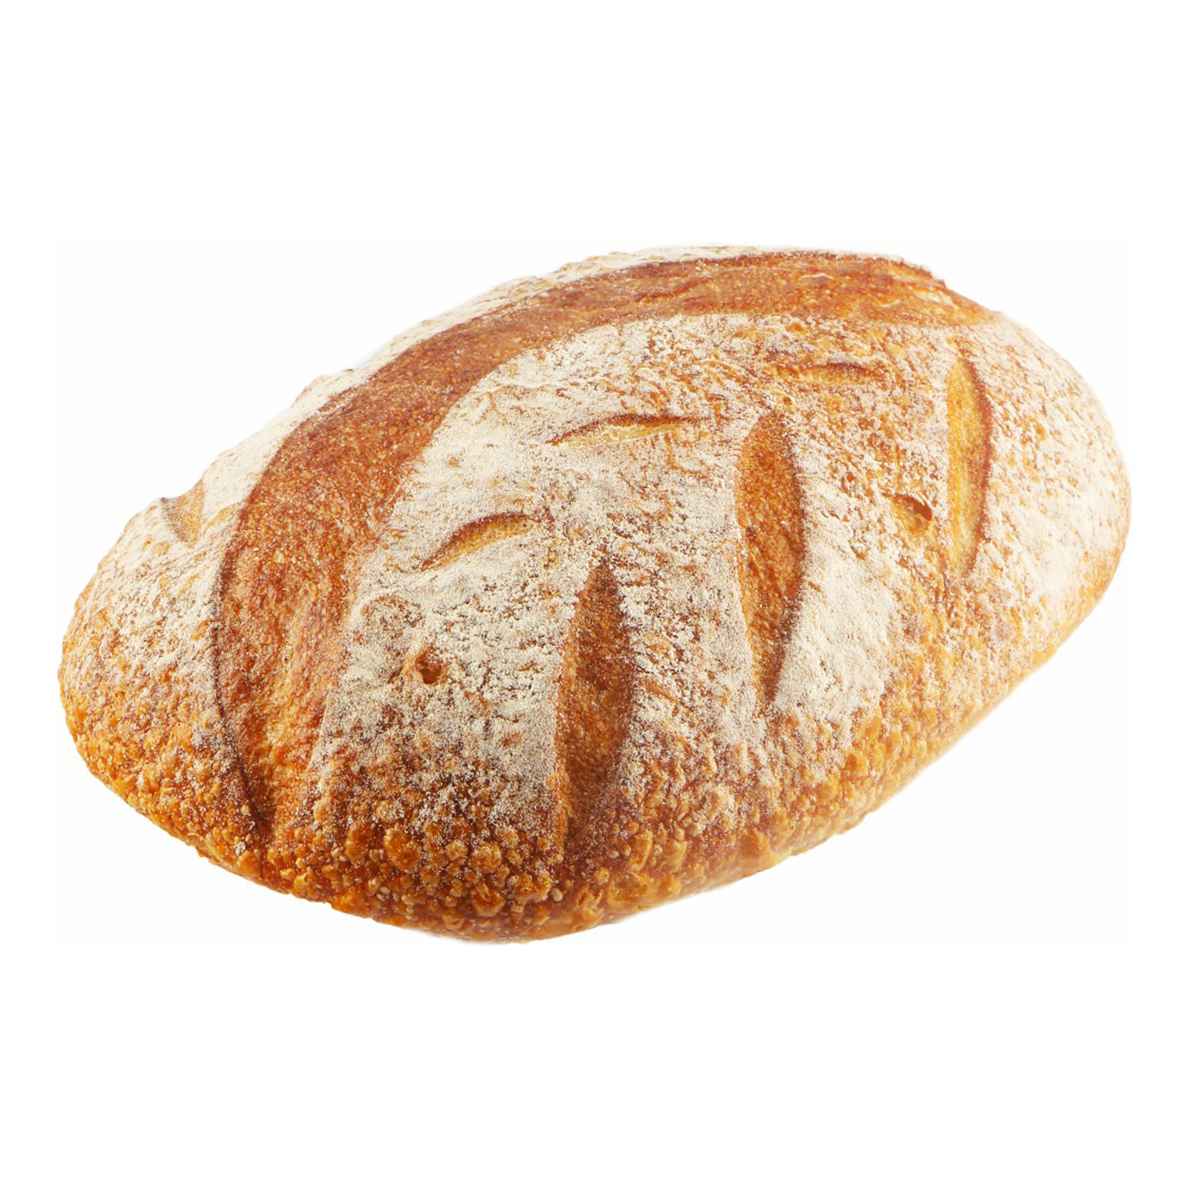 Хлеб Лента пшеничный 640 г